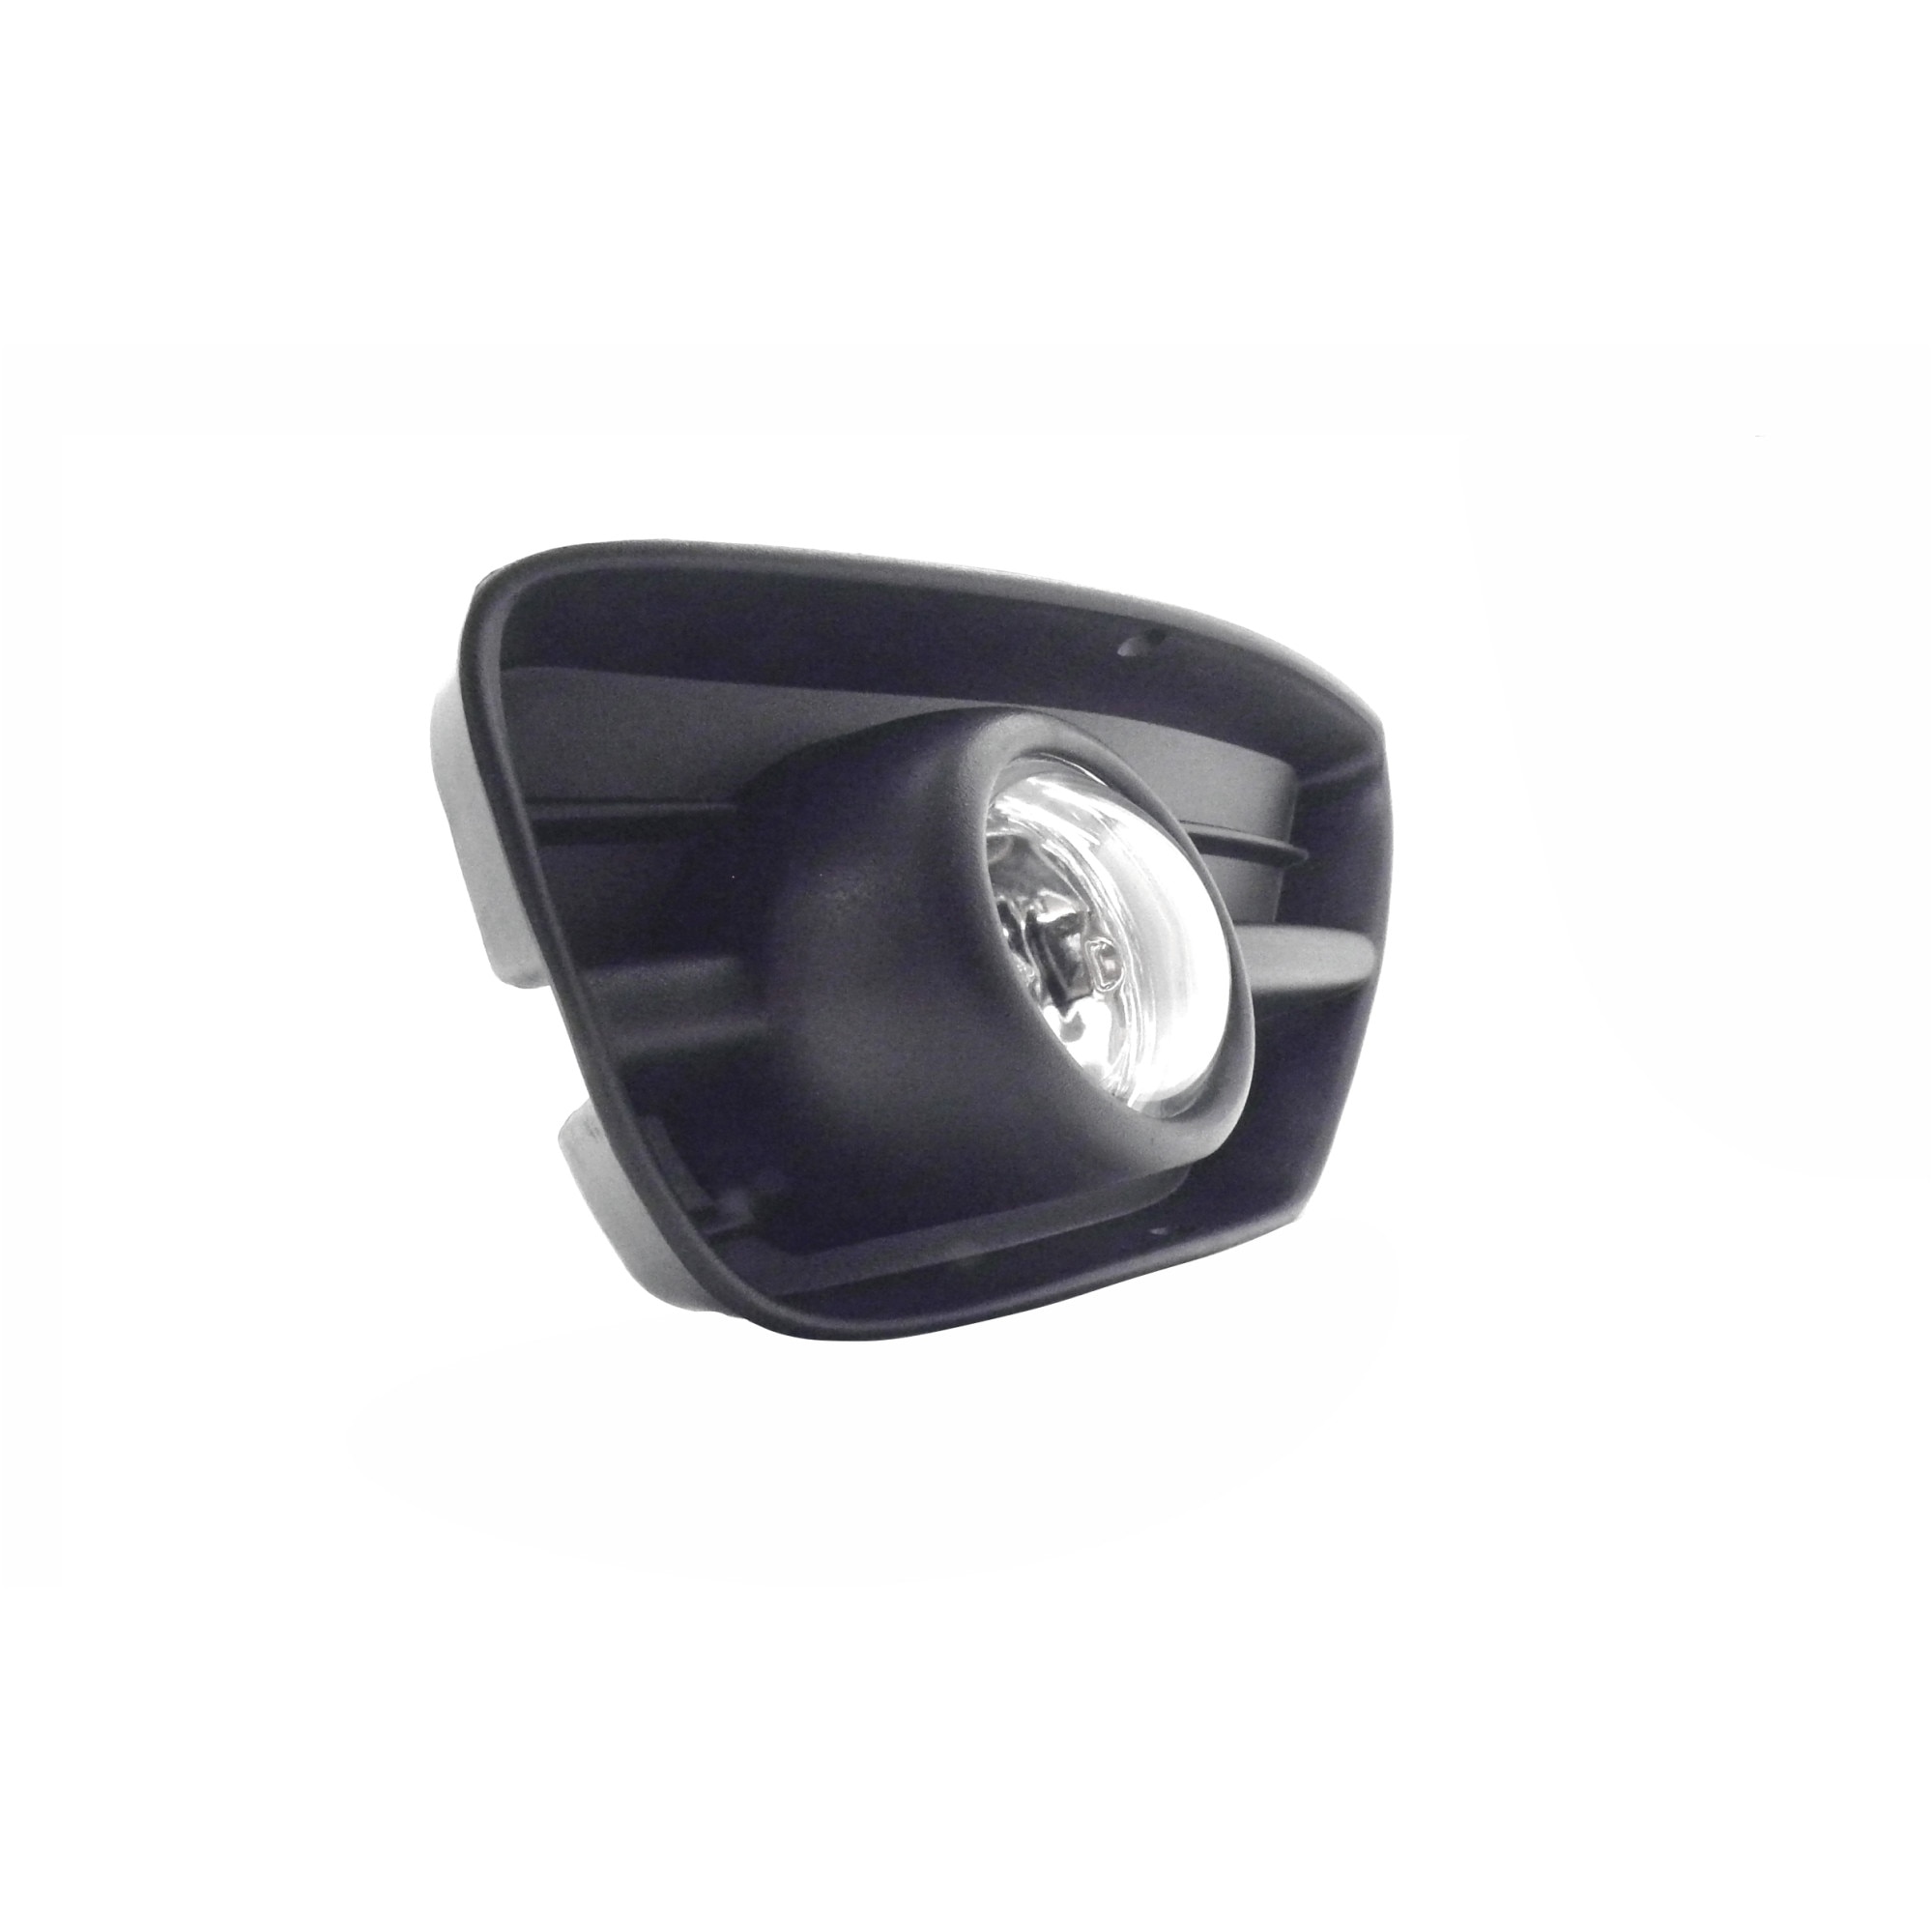 Grile plastic cu ceata compatibile Ford 1 cu bec LED, lumina alba - eMAG.ro